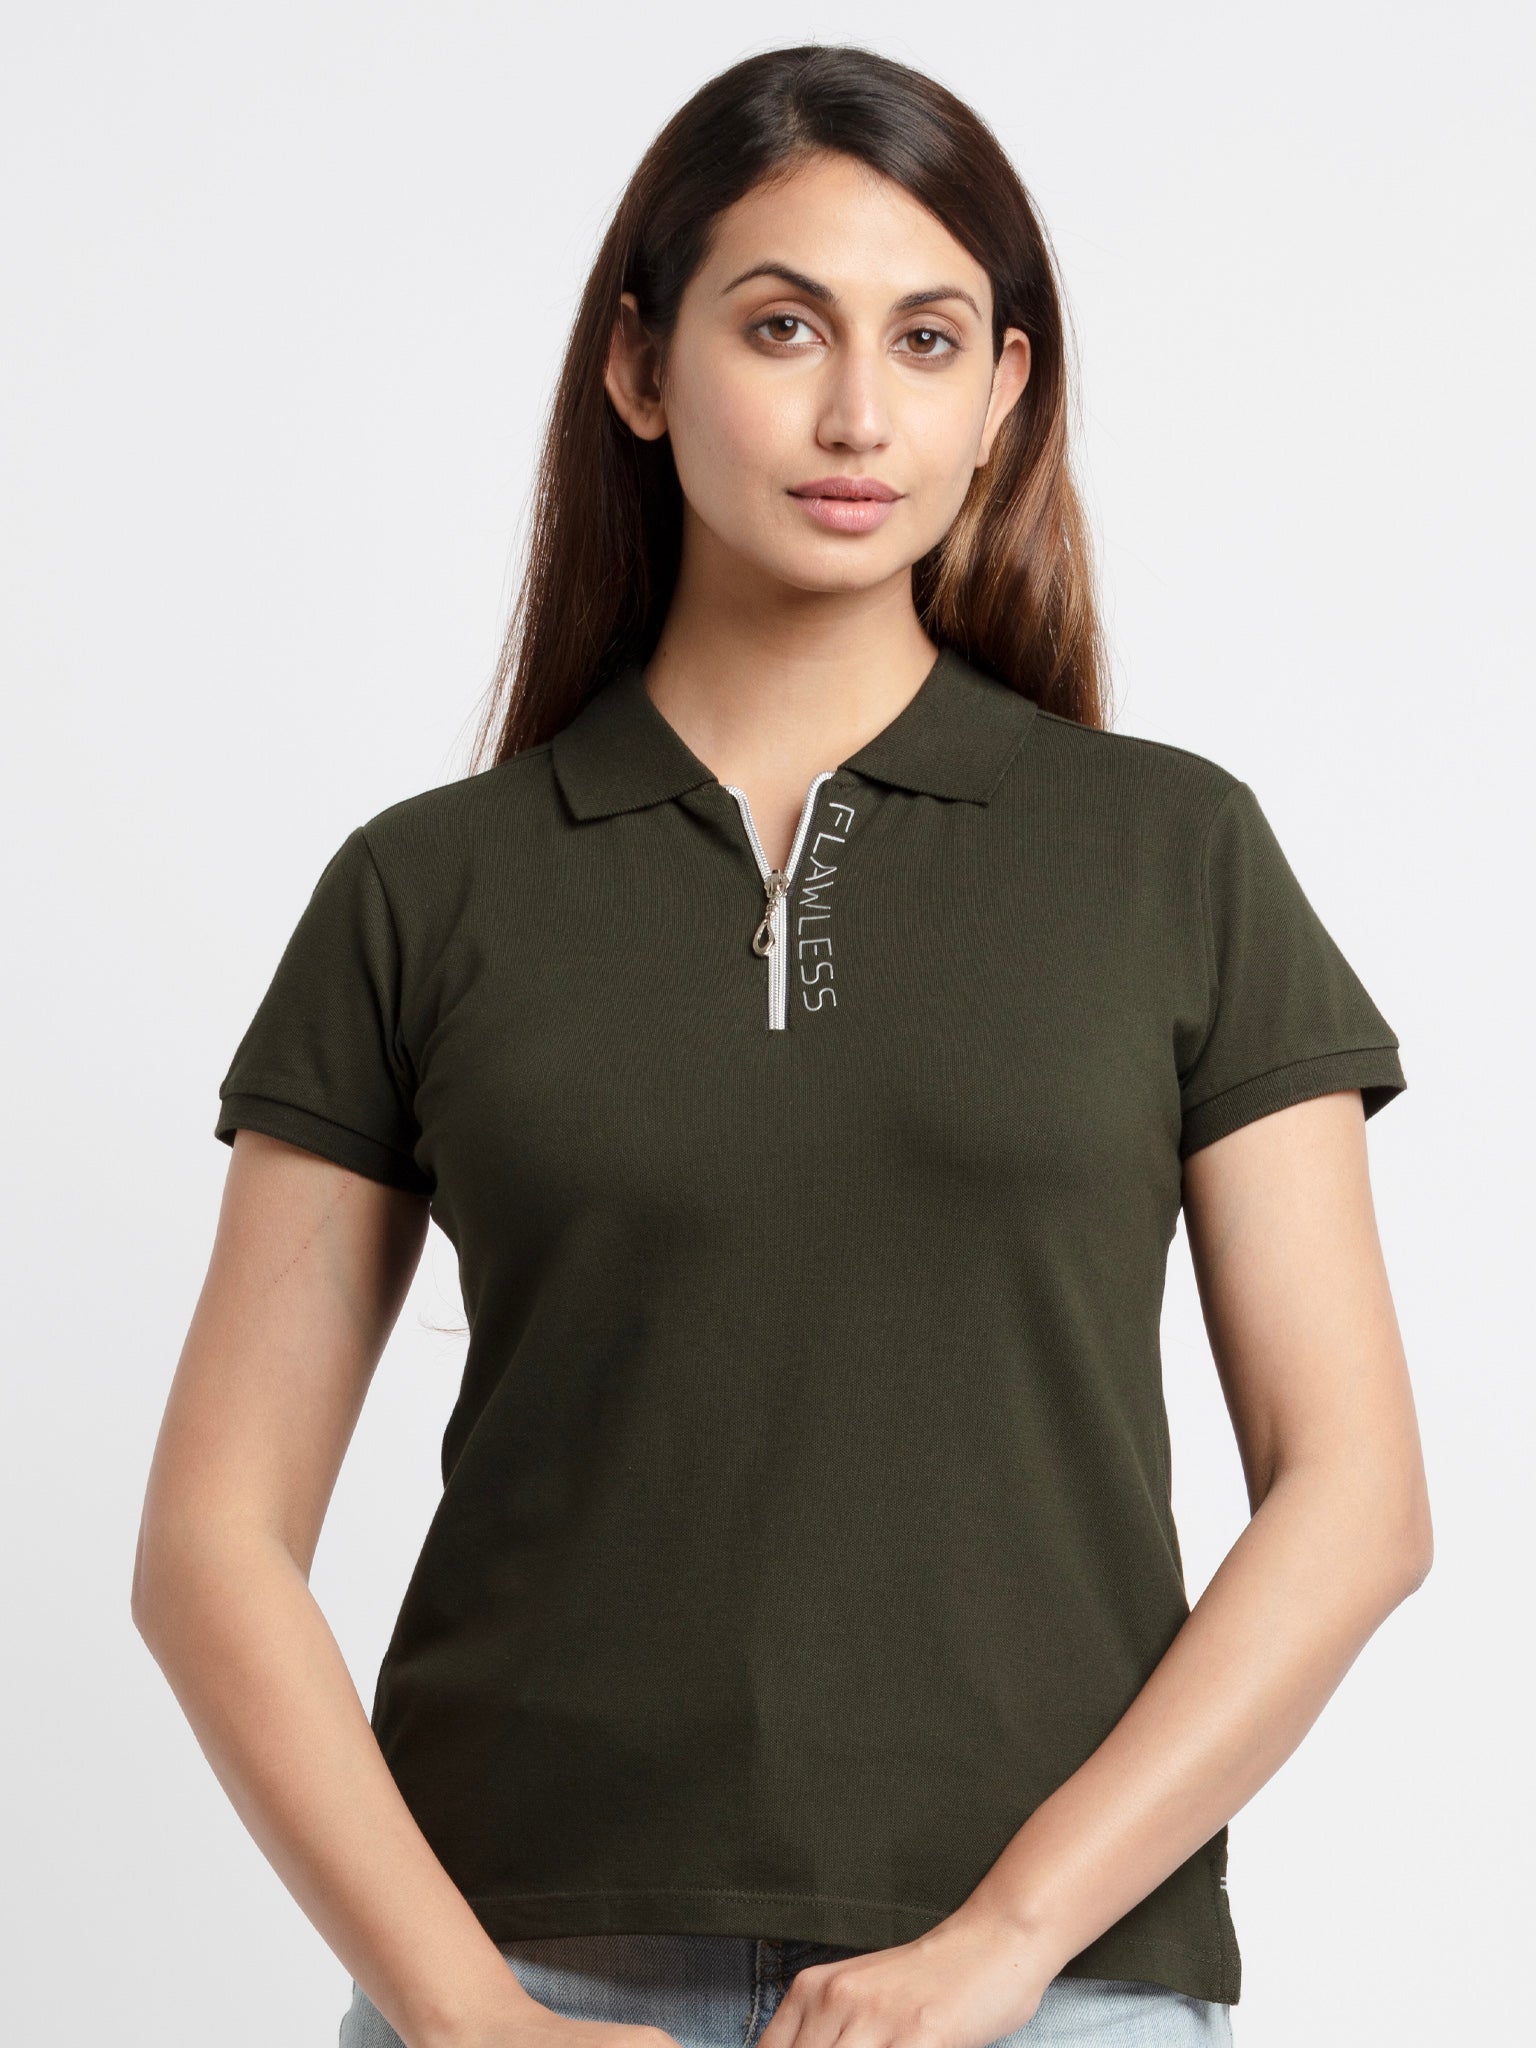 Status Quo |Womens Printed Polo T-Shirt - S, M,  L,  XL,  XXL, 3XL